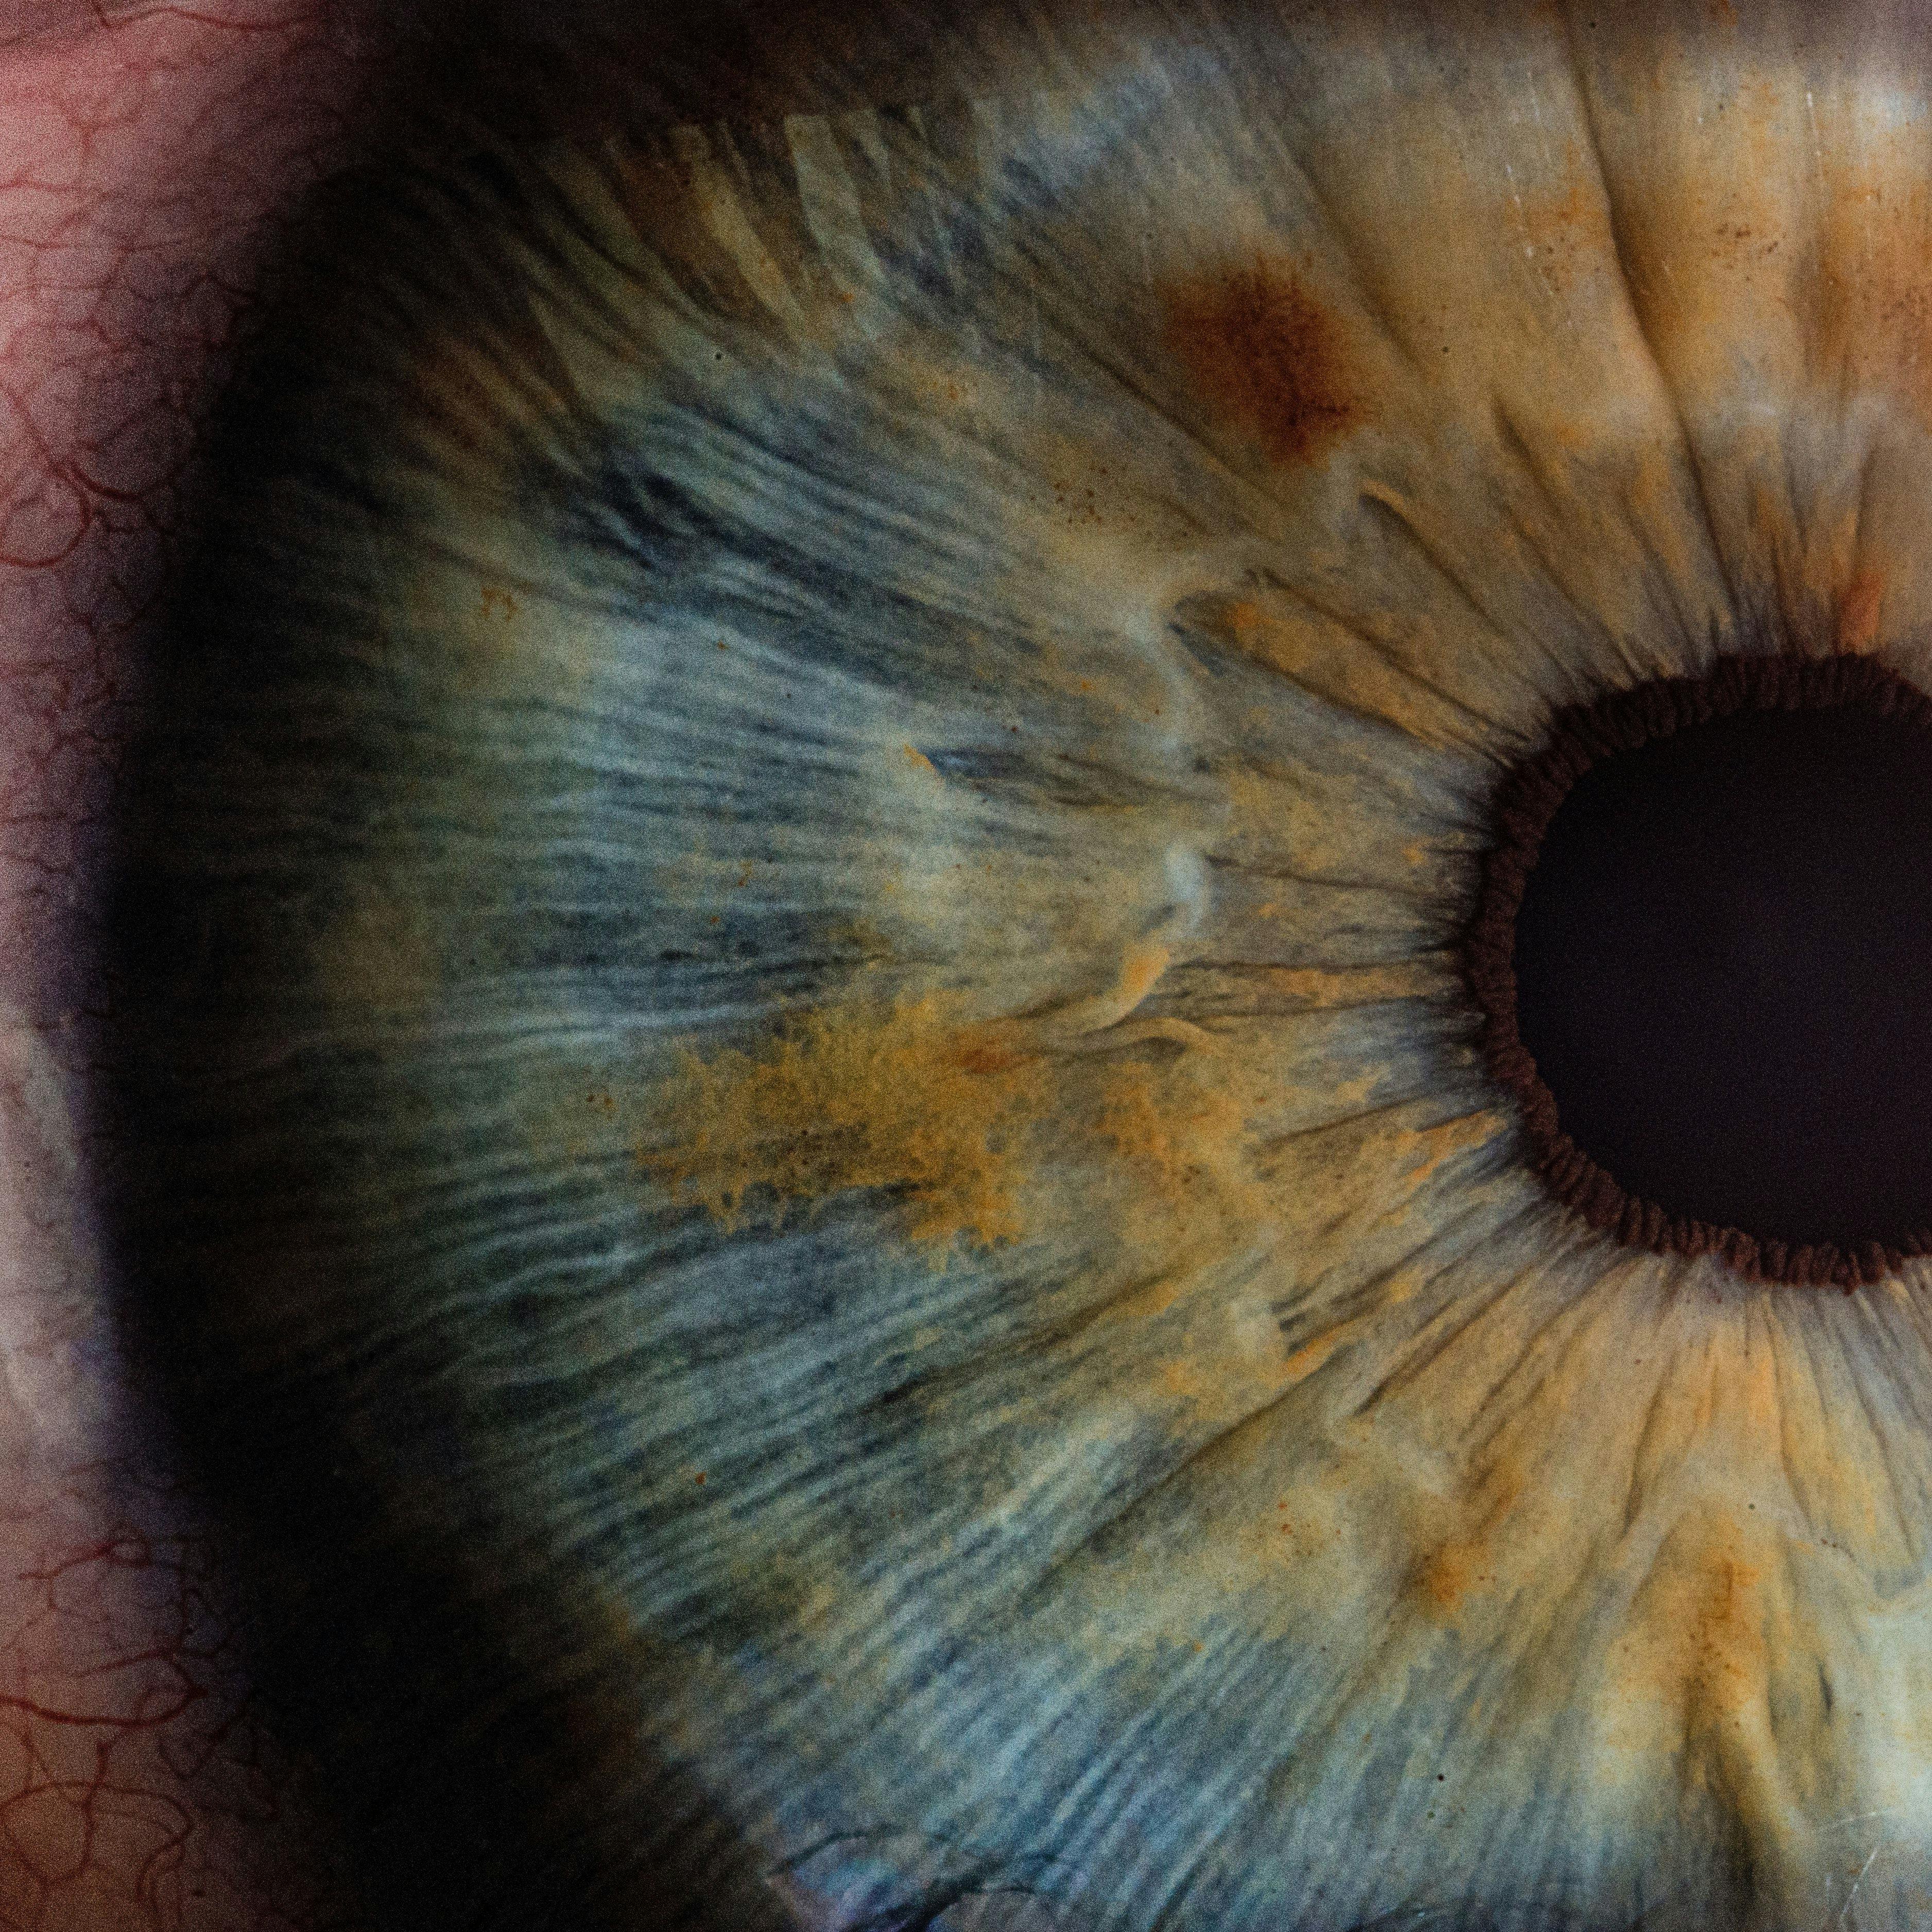 Close-up of Eye | Image Credit: V2osk/Unsplash